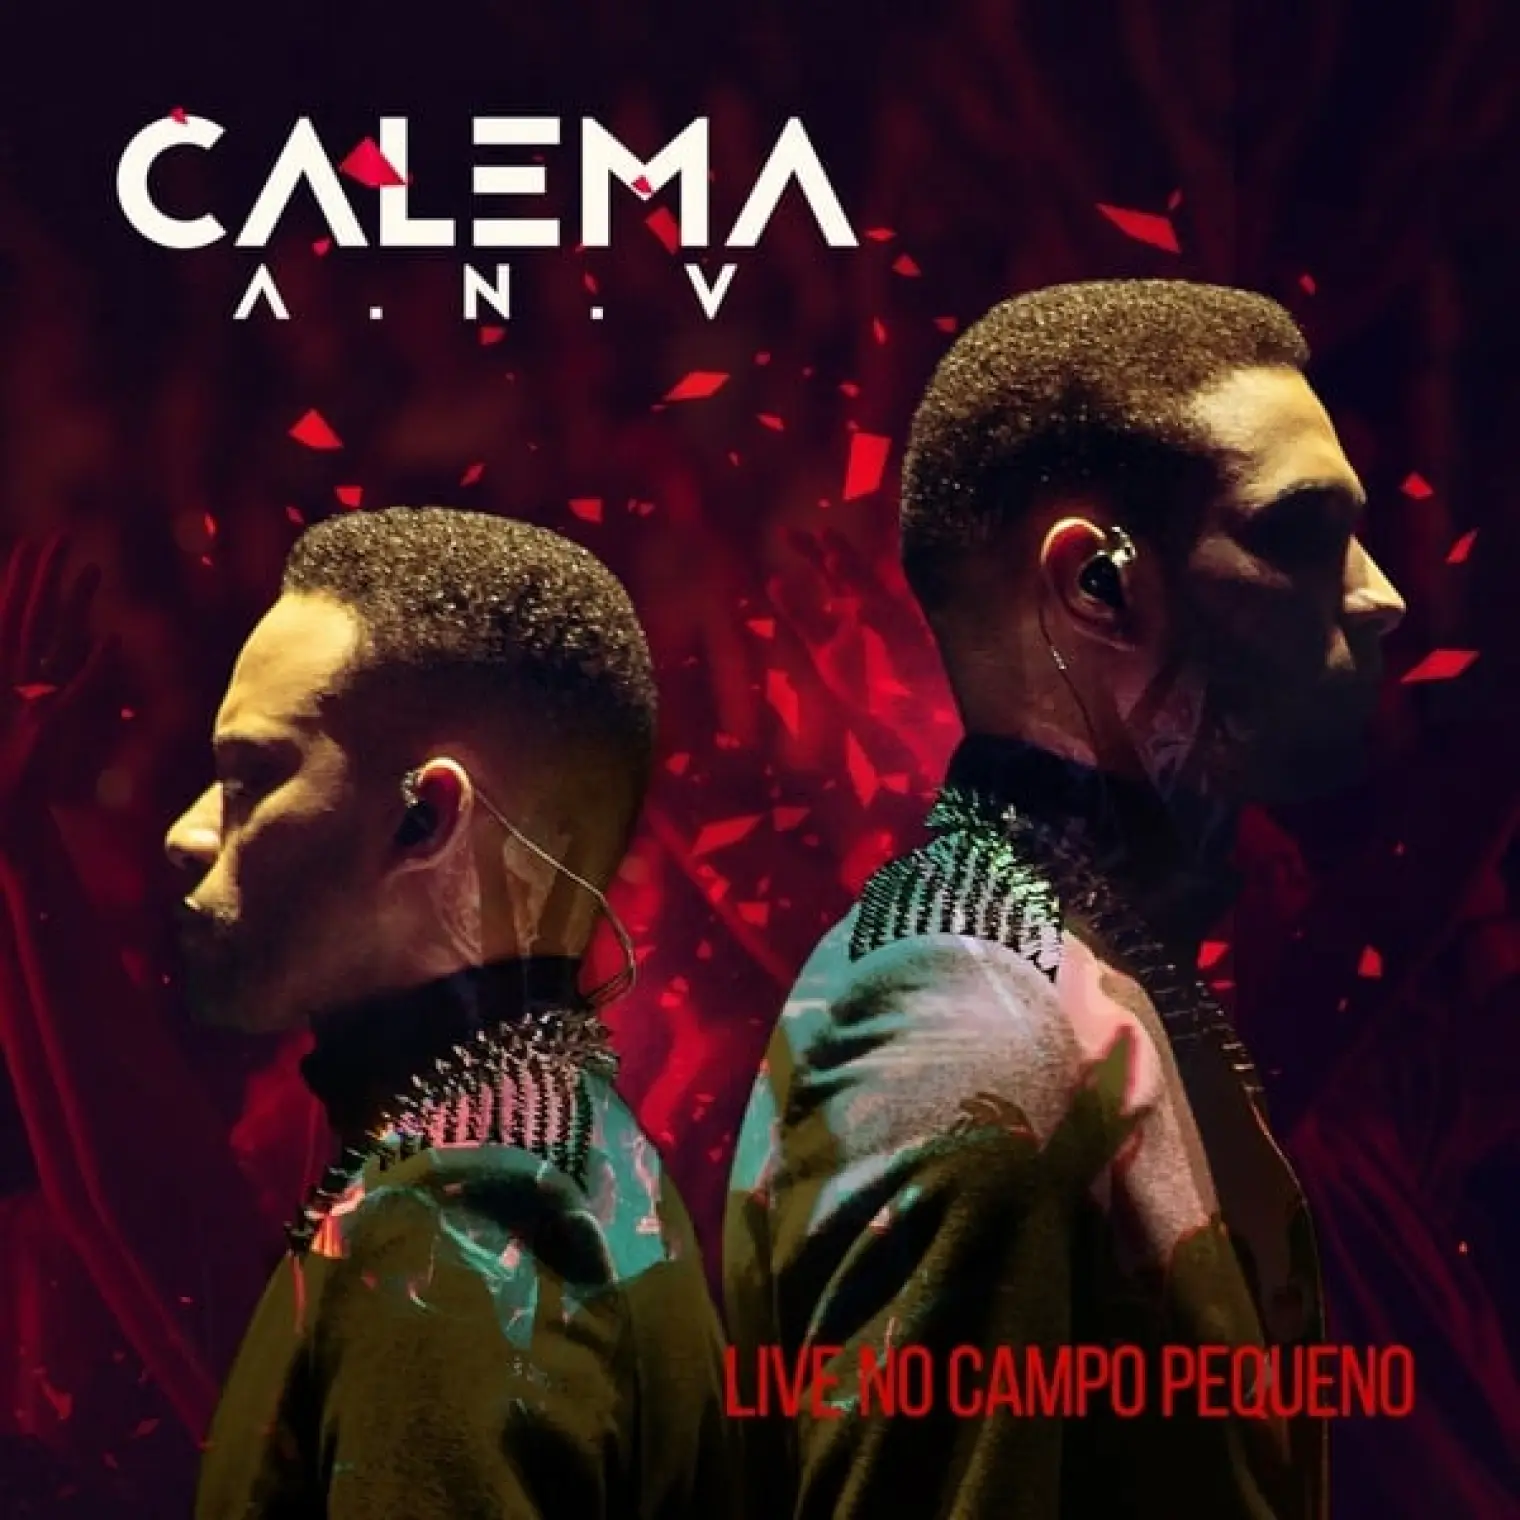 A.N.V Live no Campo Pequeno -  Calema 